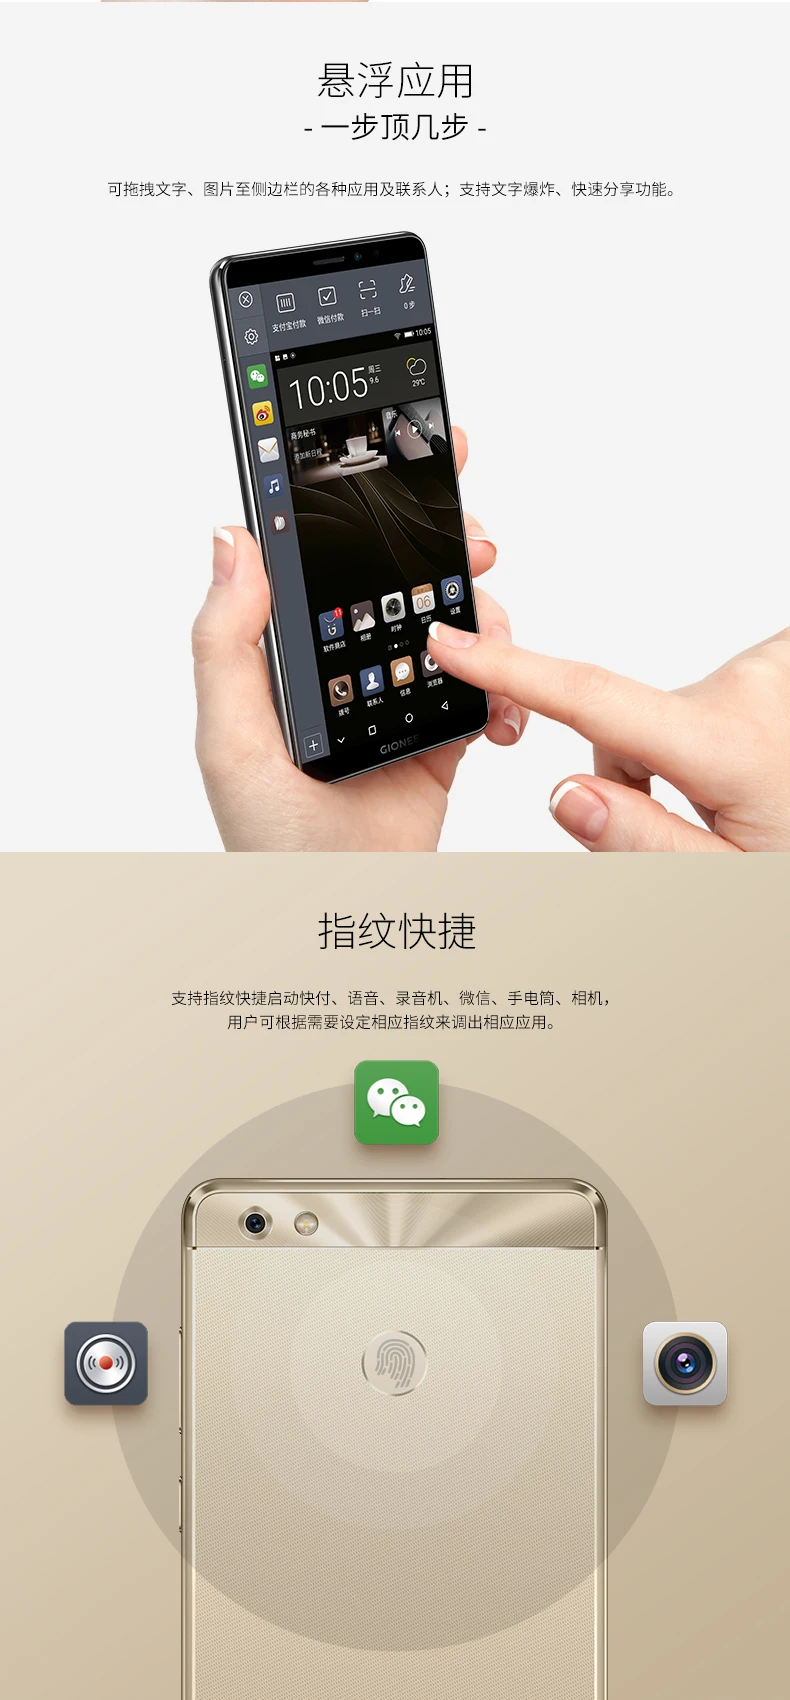 Мобильный телефон Gionee M7 с глобальной прошивкой, Android 7,1, Восьмиядерный процессор Snapdragon MSM8940, 4+ 64 ГБ, полноэкранная камера 13 м, 5000 мА/ч